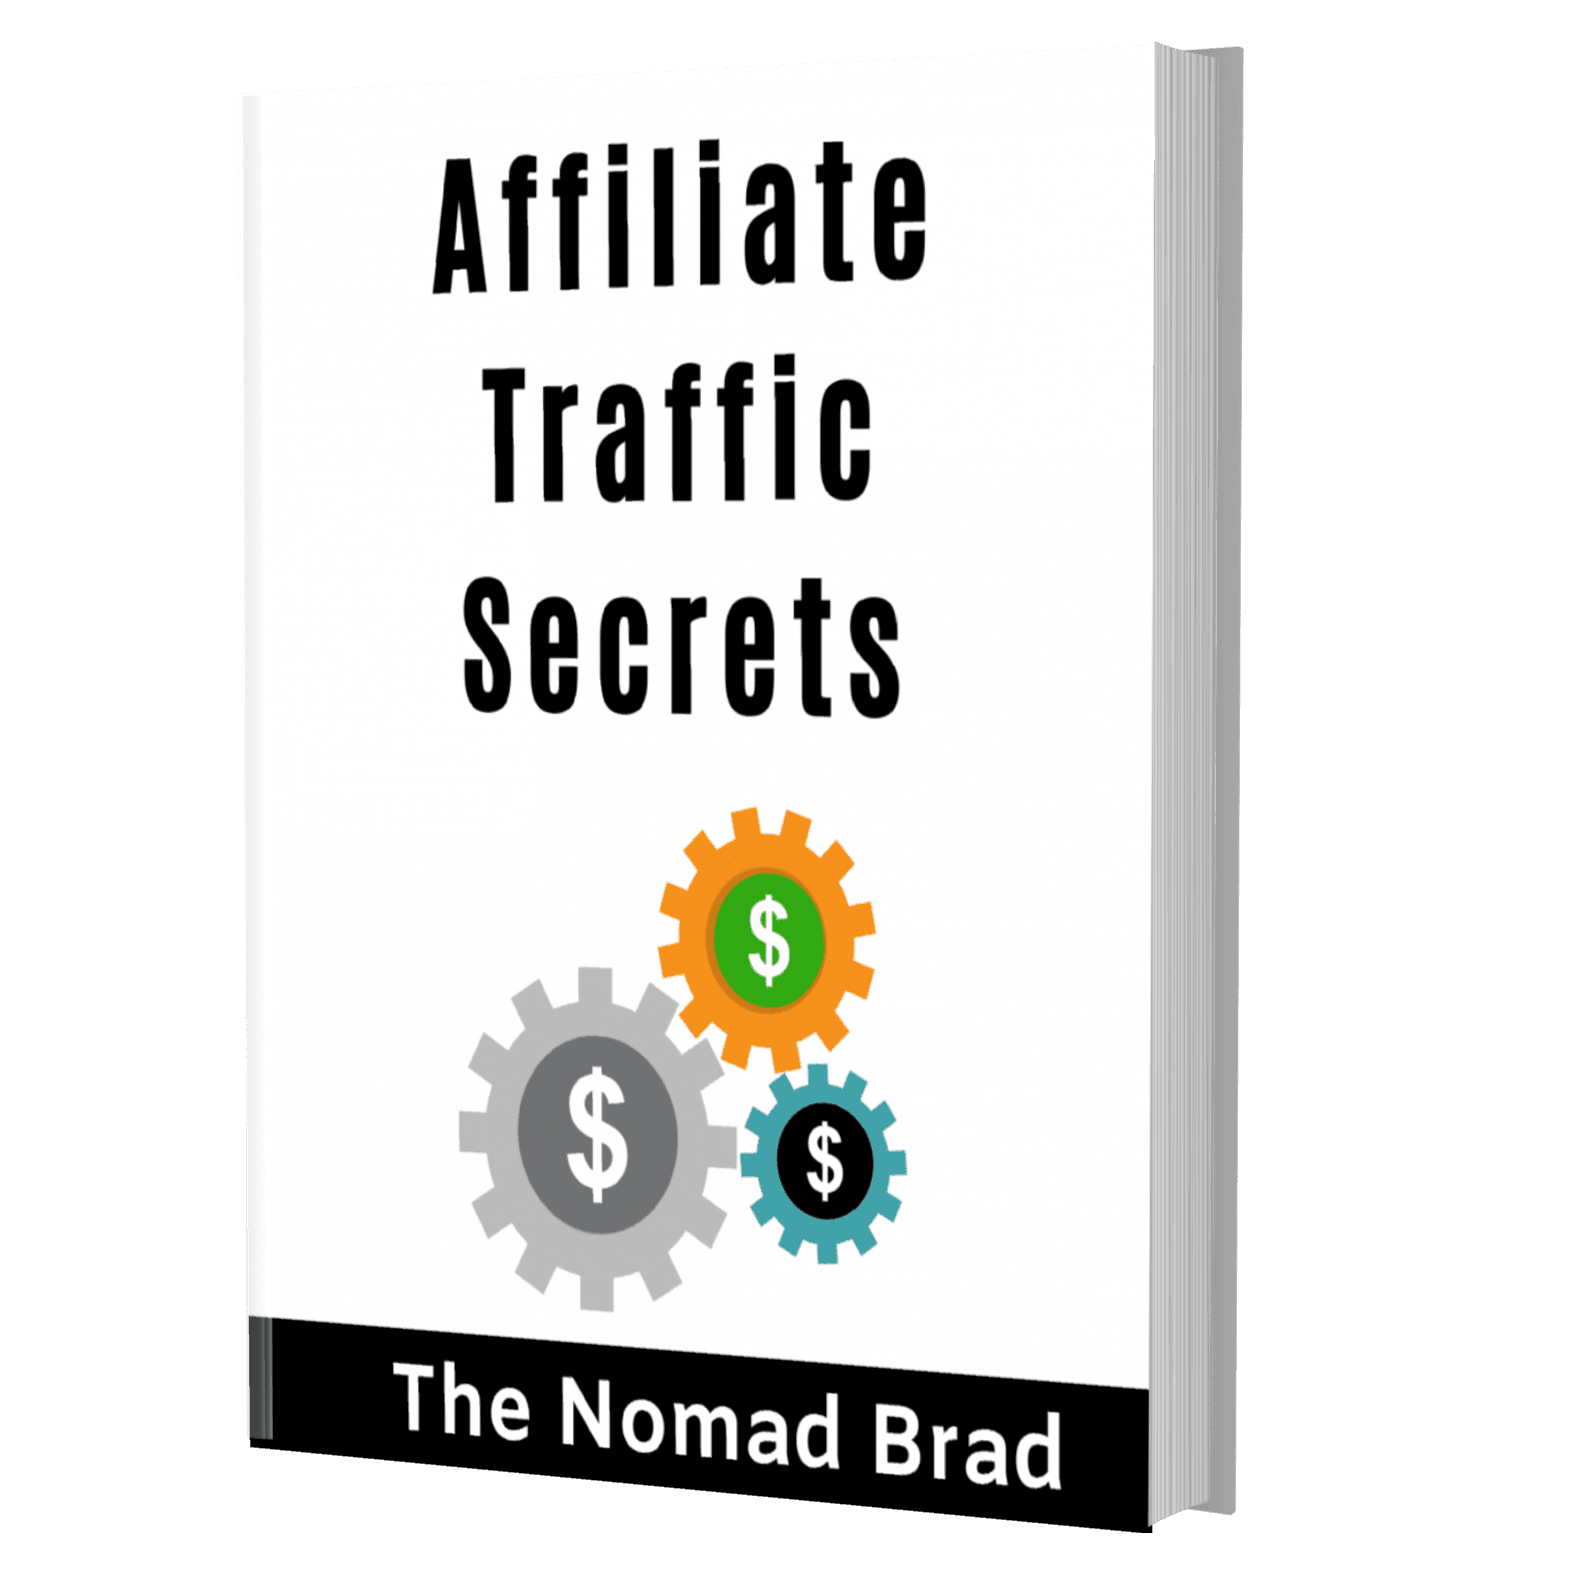 Affiliate Traffic Secrets Cover Book